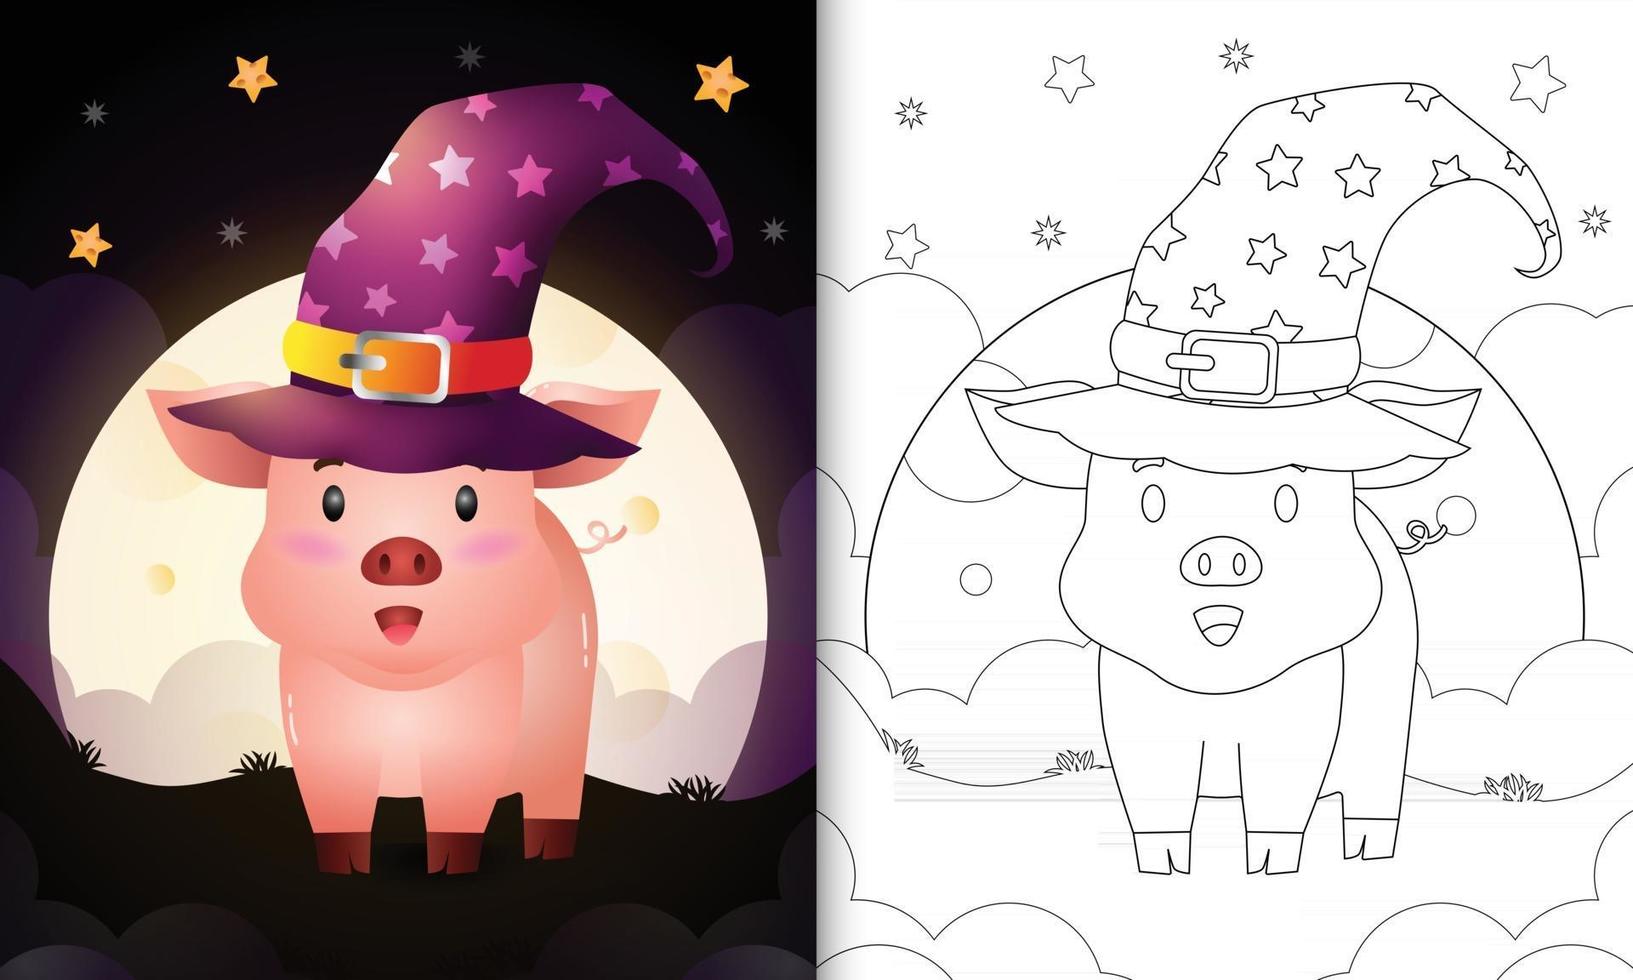 kleurboek met een leuke cartoon halloween heks varken voor de maan vector